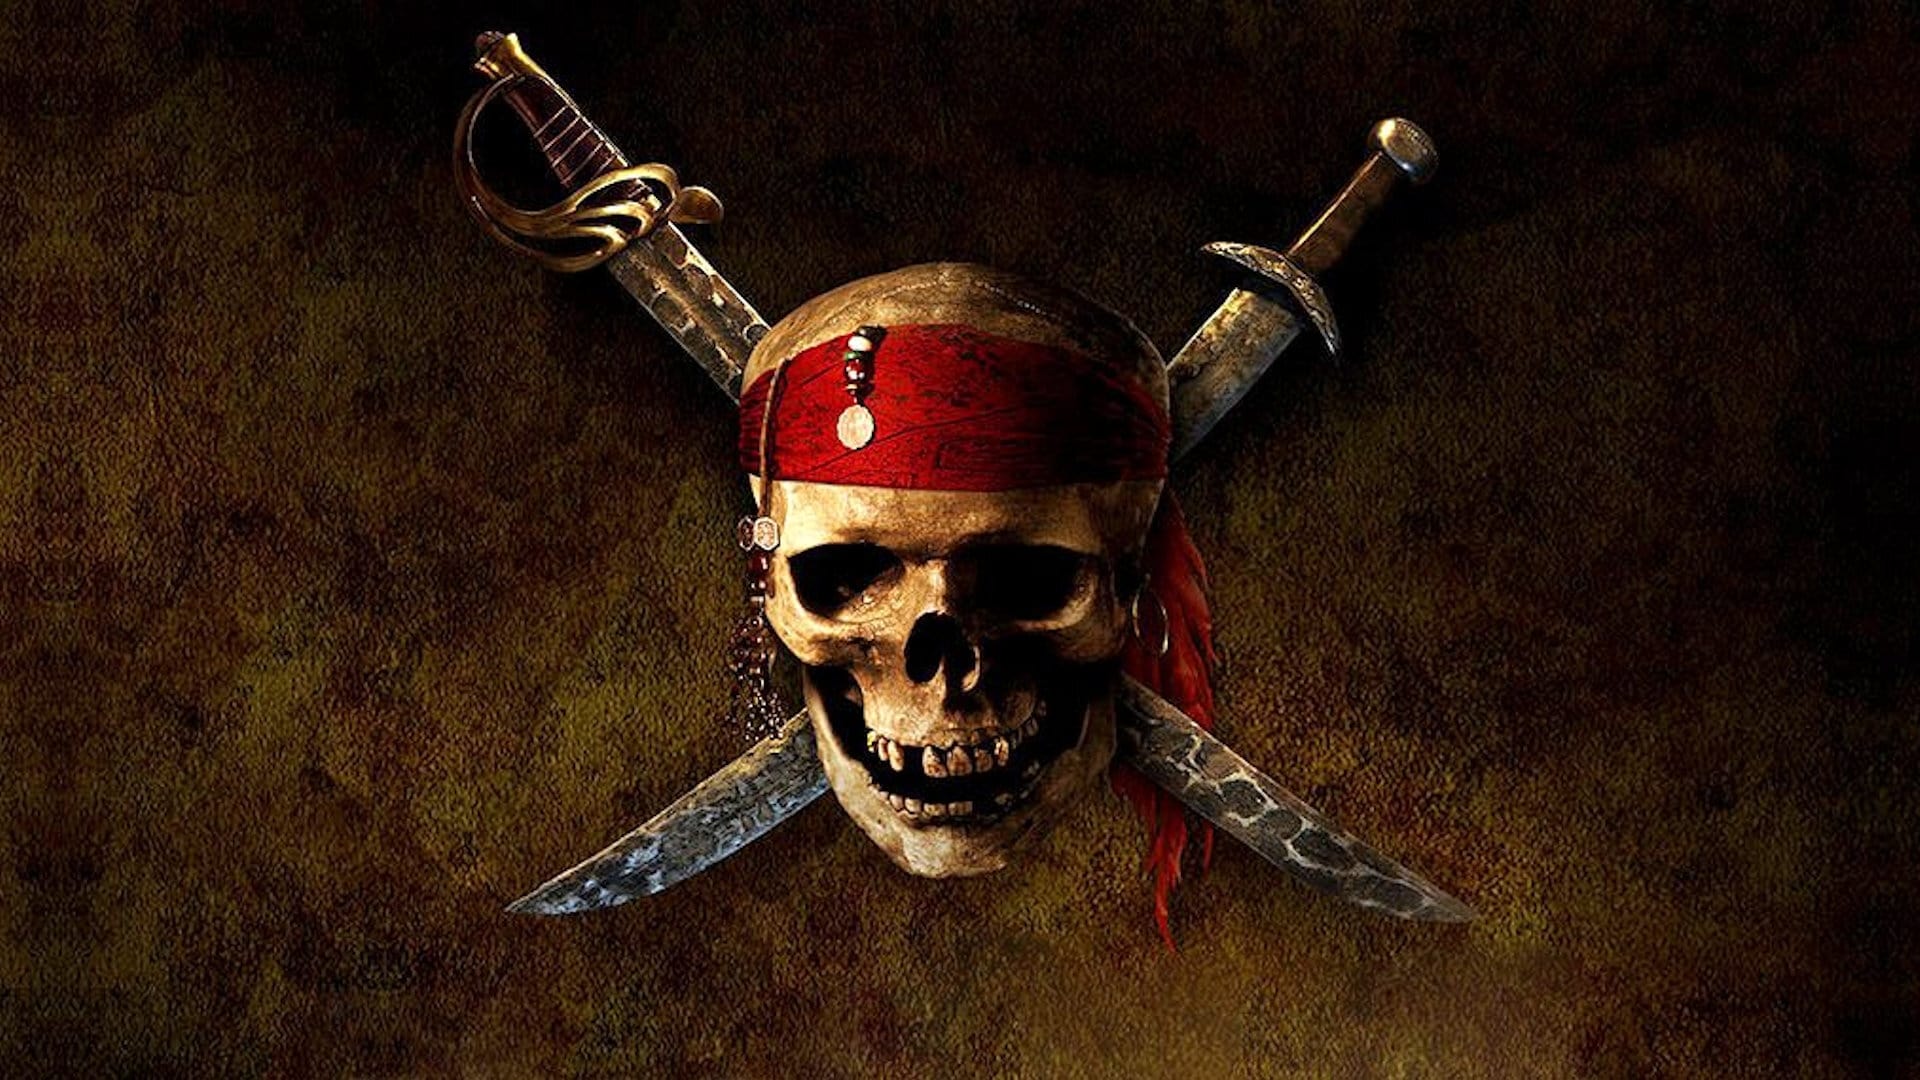 Piratas das Caraíbas: A Maldição do Pérola Negra